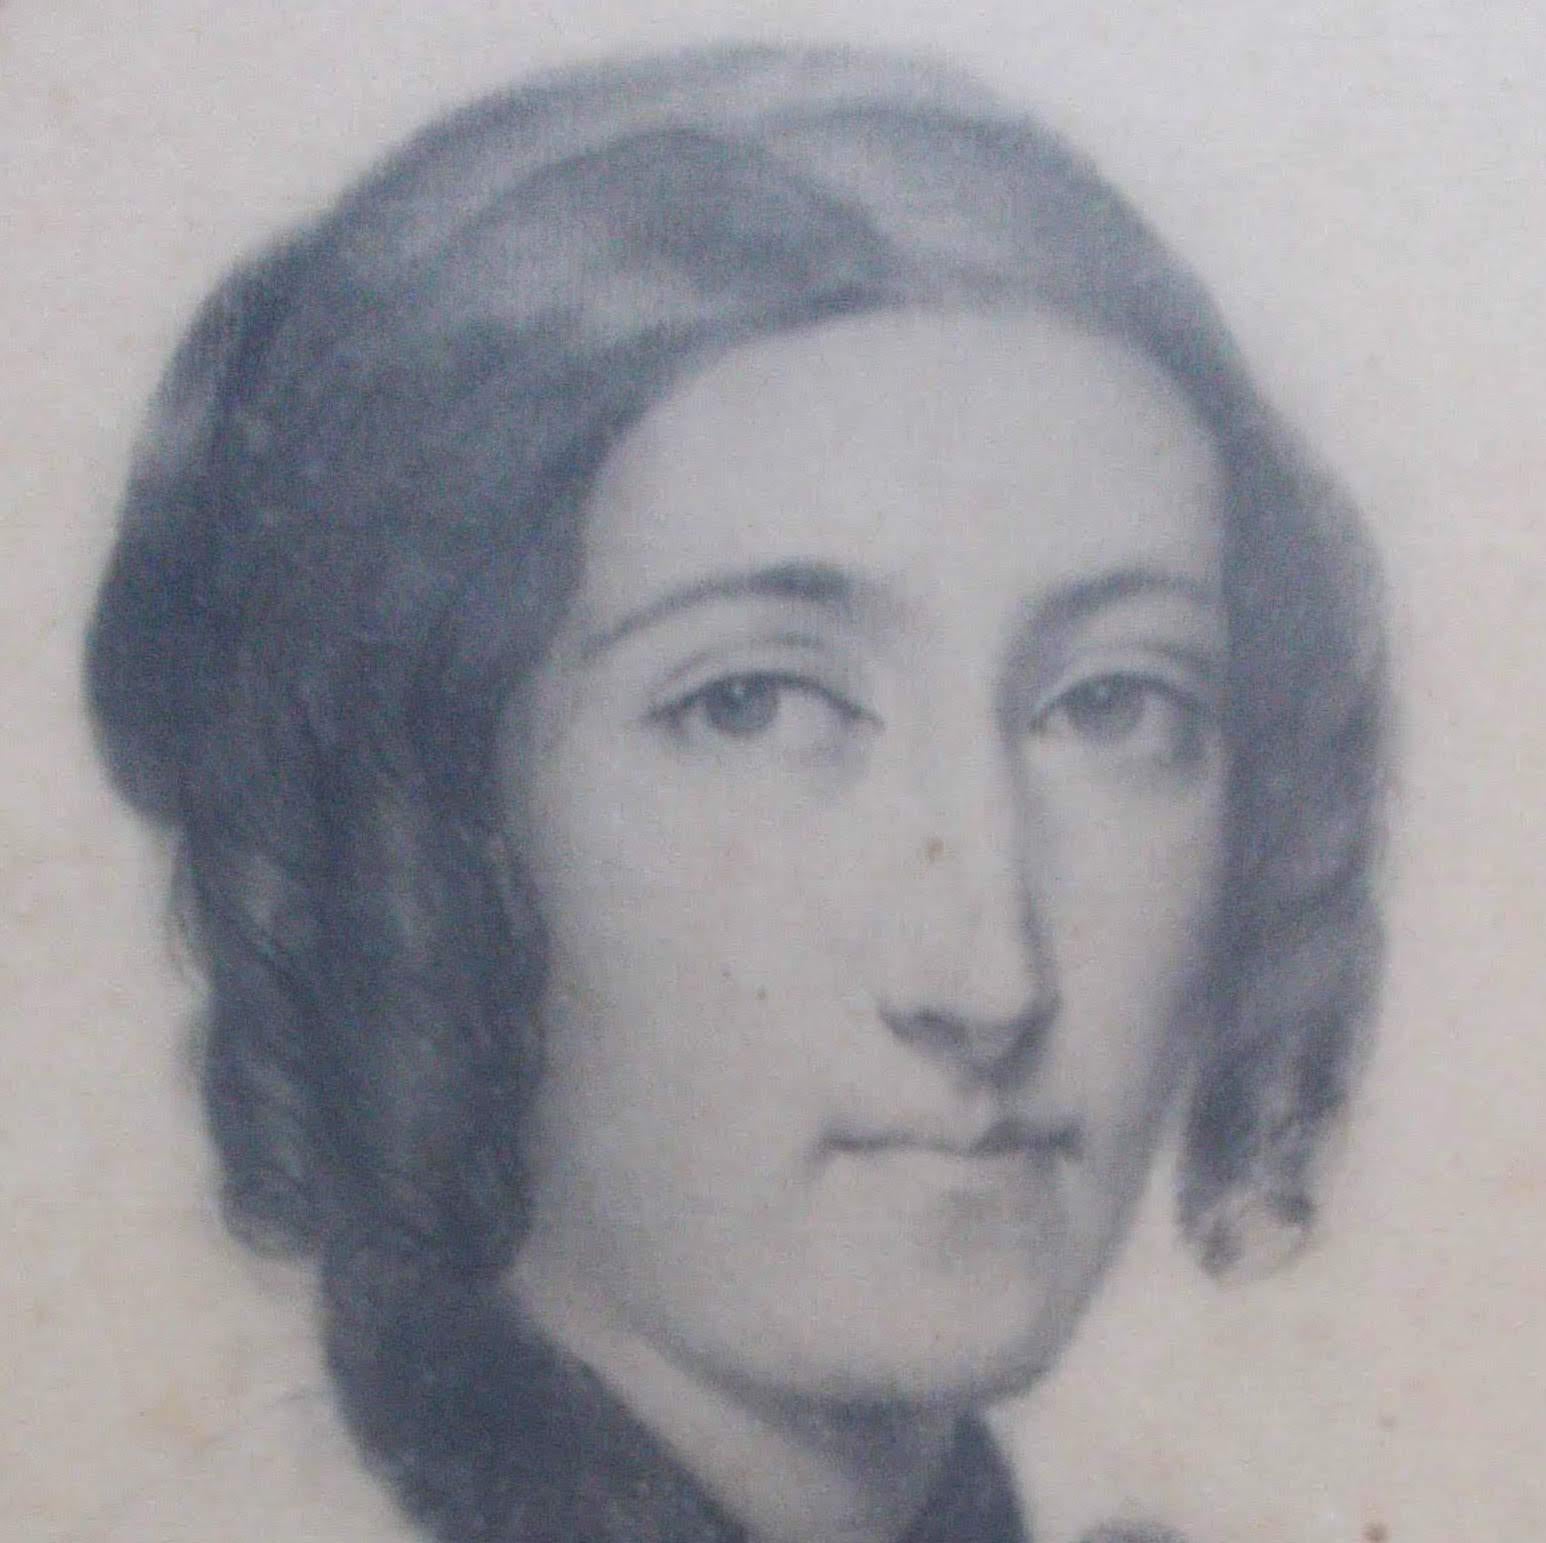 Portrait de dame parisienne Madame Seguin du 19ème siècle de la période romantique française des années 1830 - Art de Adele Grasset